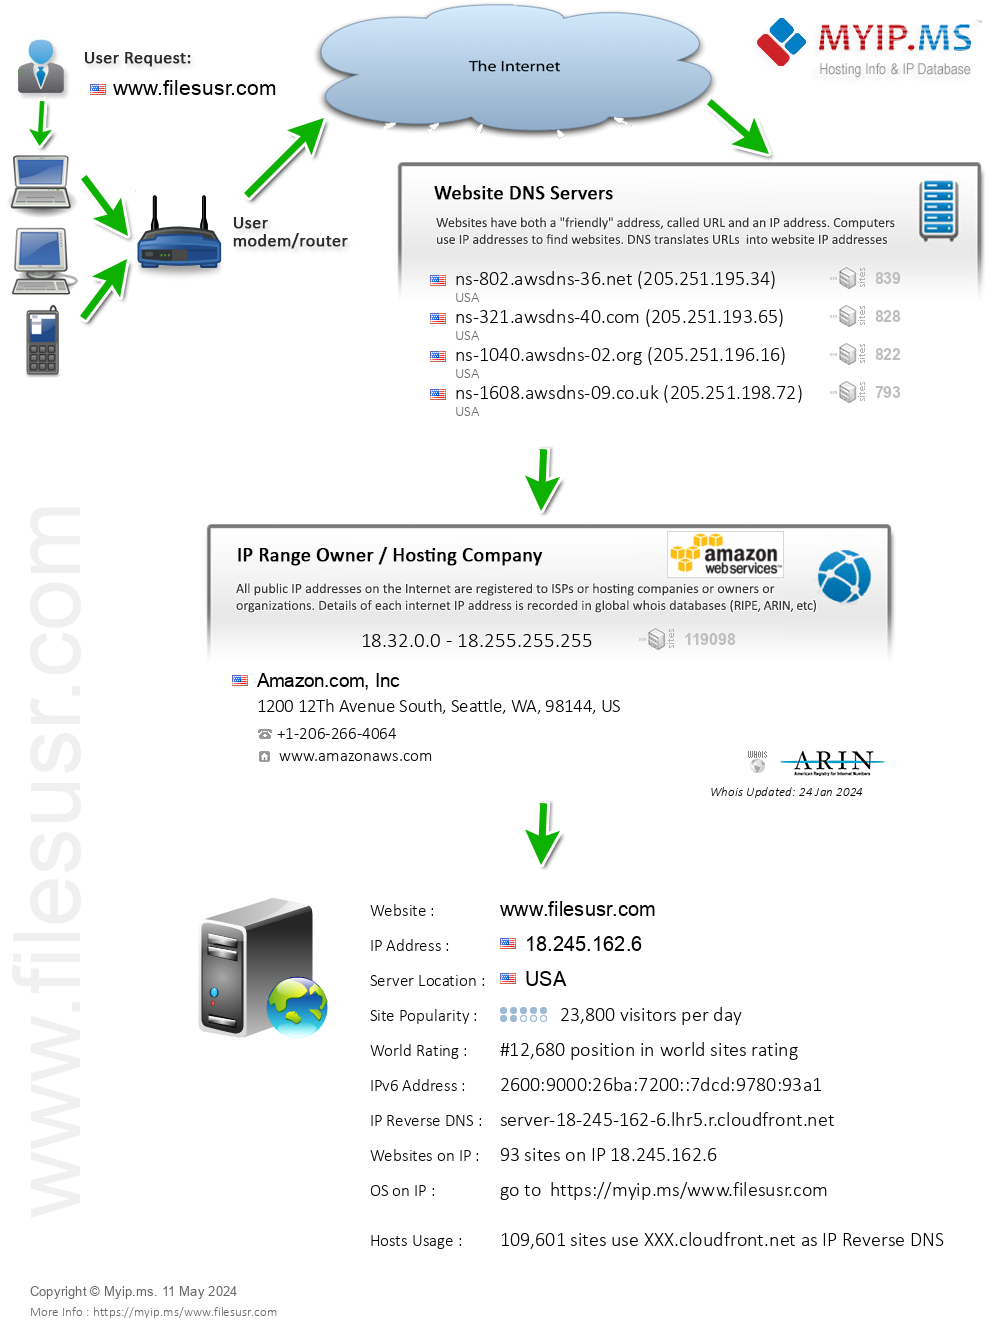 Filesusr.com - Website Hosting Visual IP Diagram